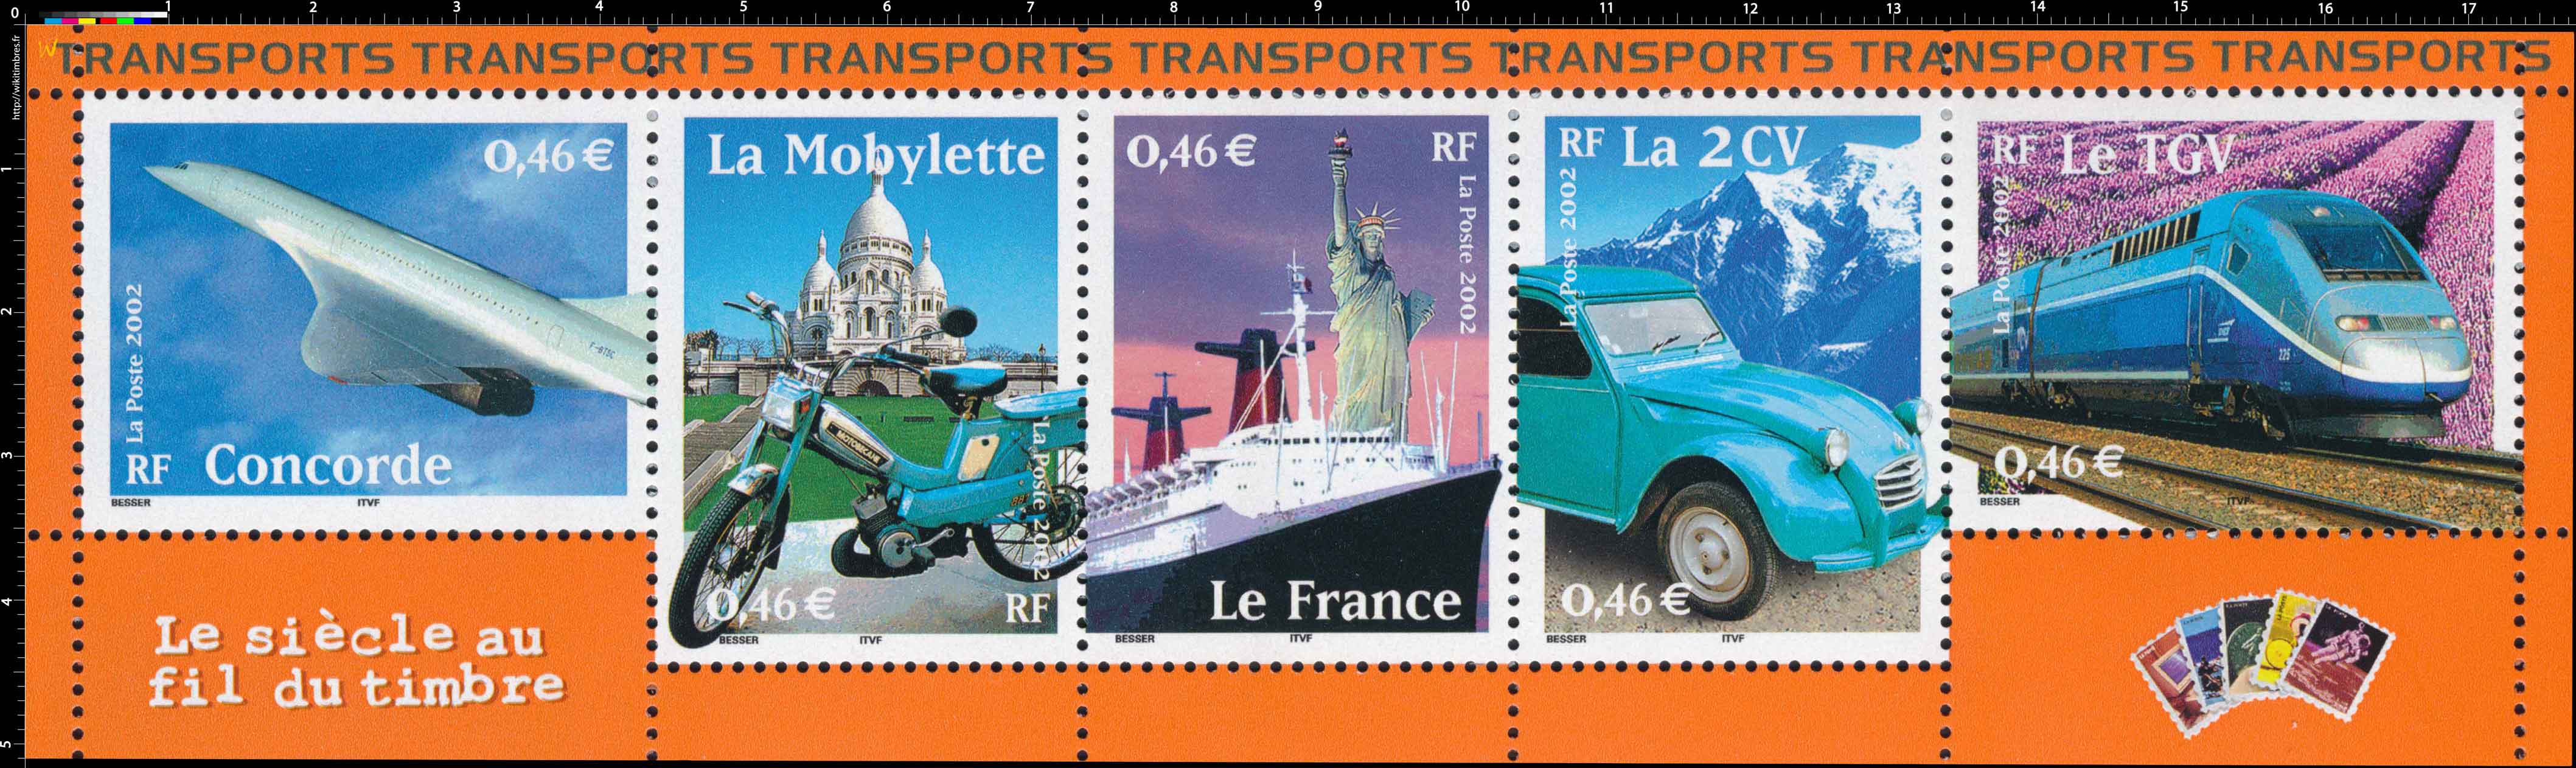 Le siècle au fil du timbre TRANSPORTS